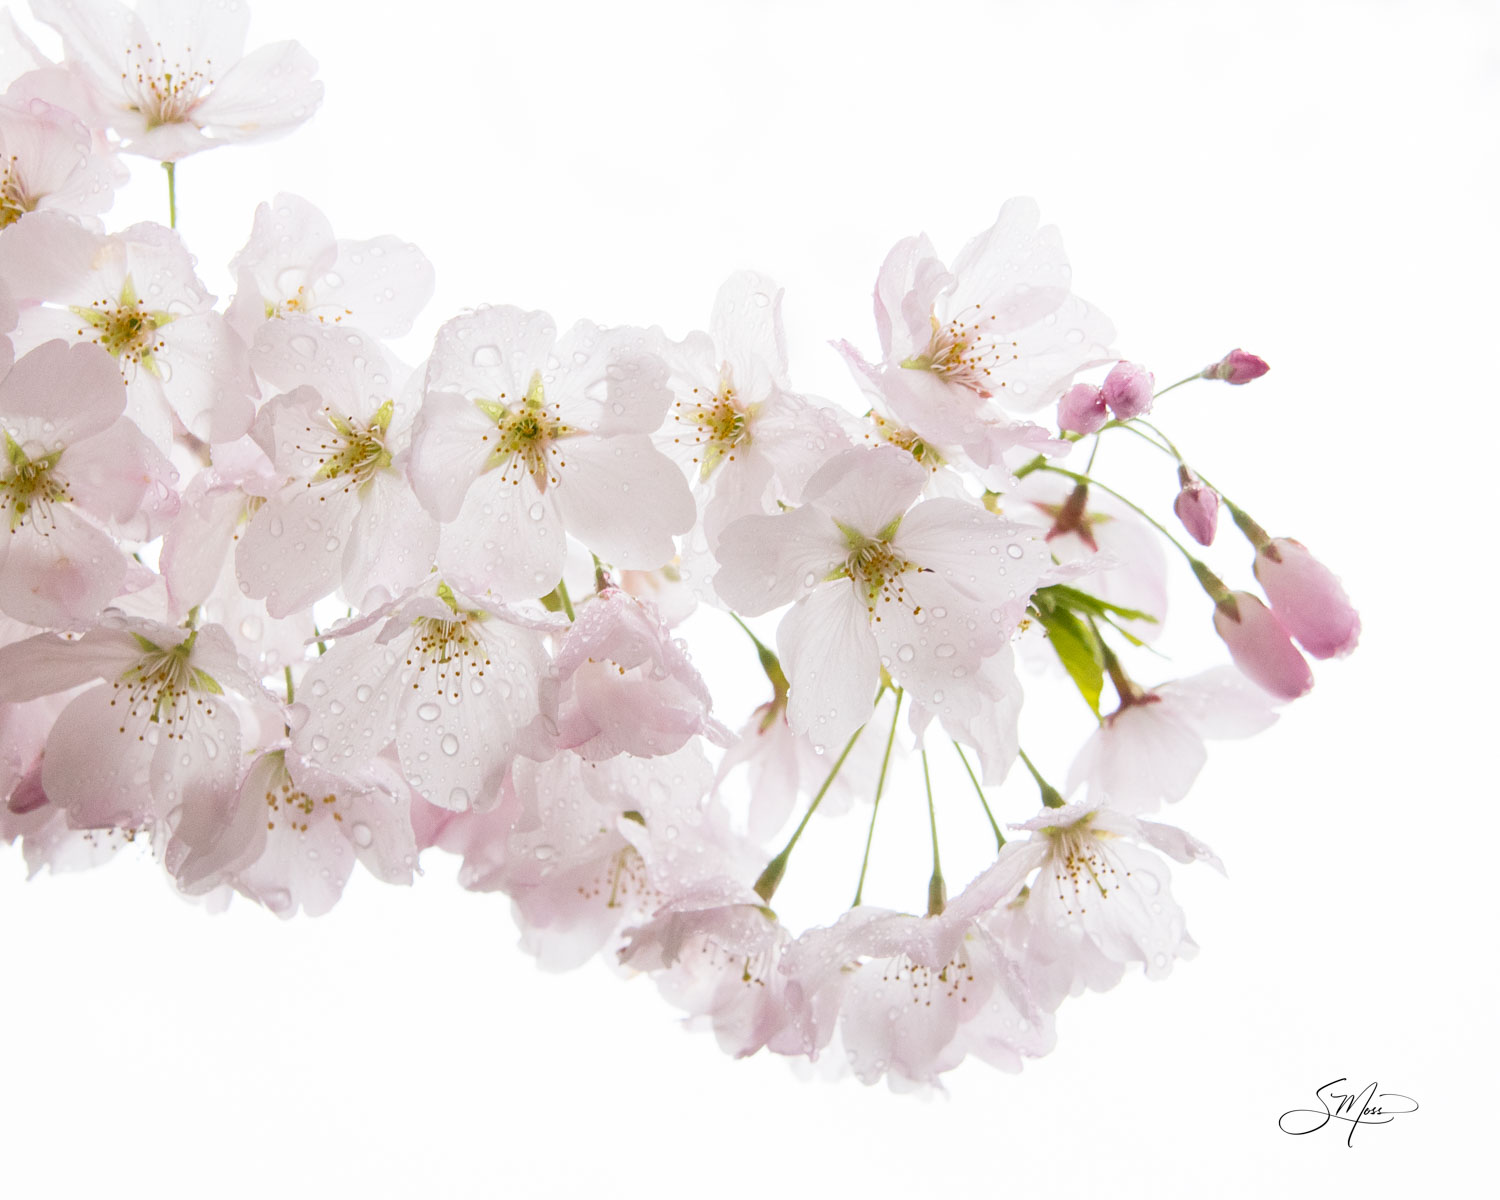 Cherry blossoms after a springtime rain